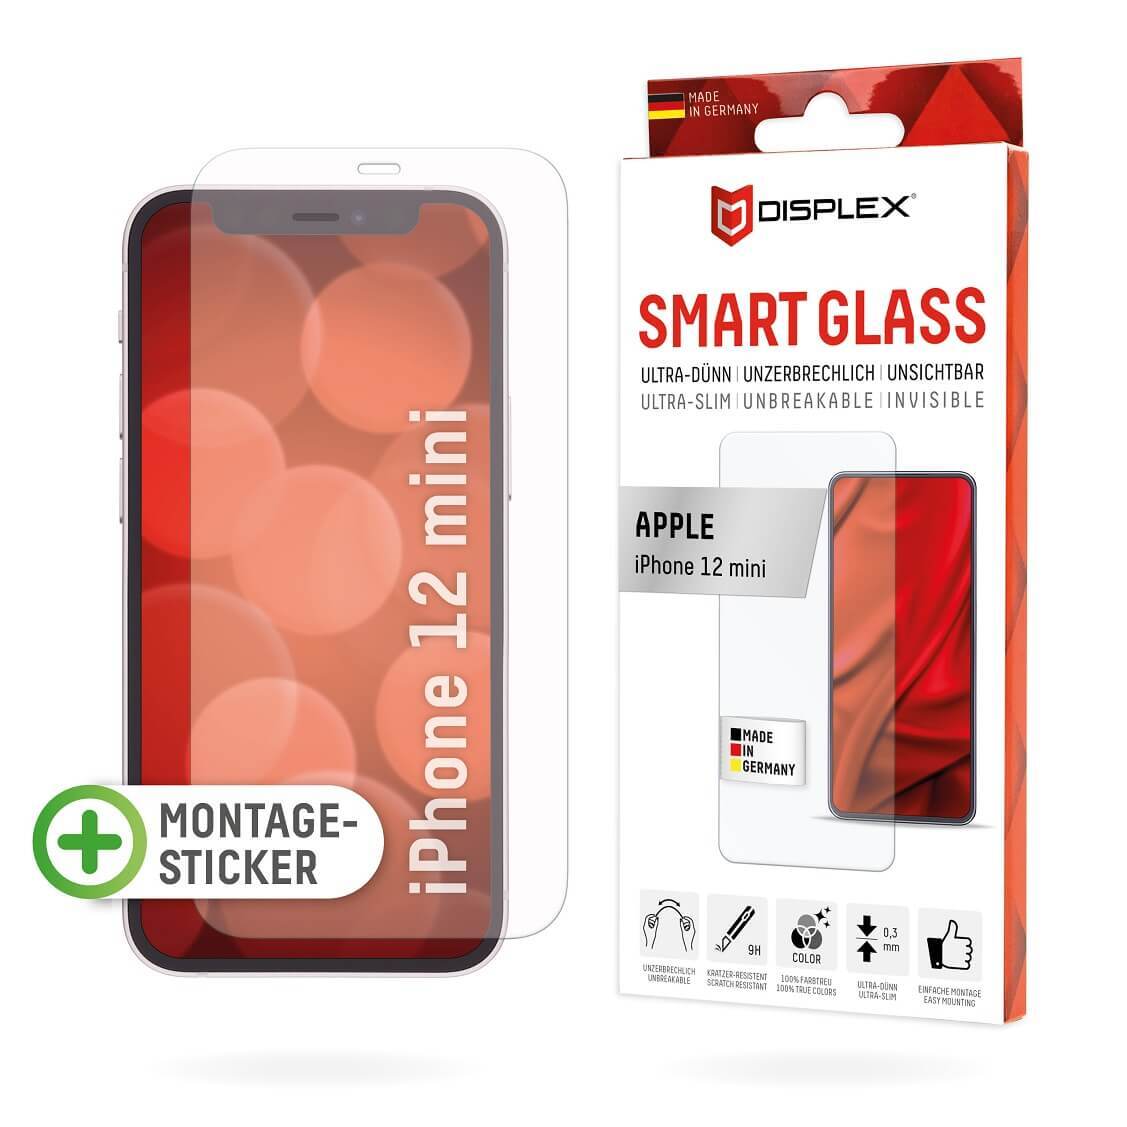 DISPLEX Smart Glass (9H) für Apple iPhone 12 mini Montagesticker, unzerbrechlich, ultra-dünn, unsichtbar von Displex